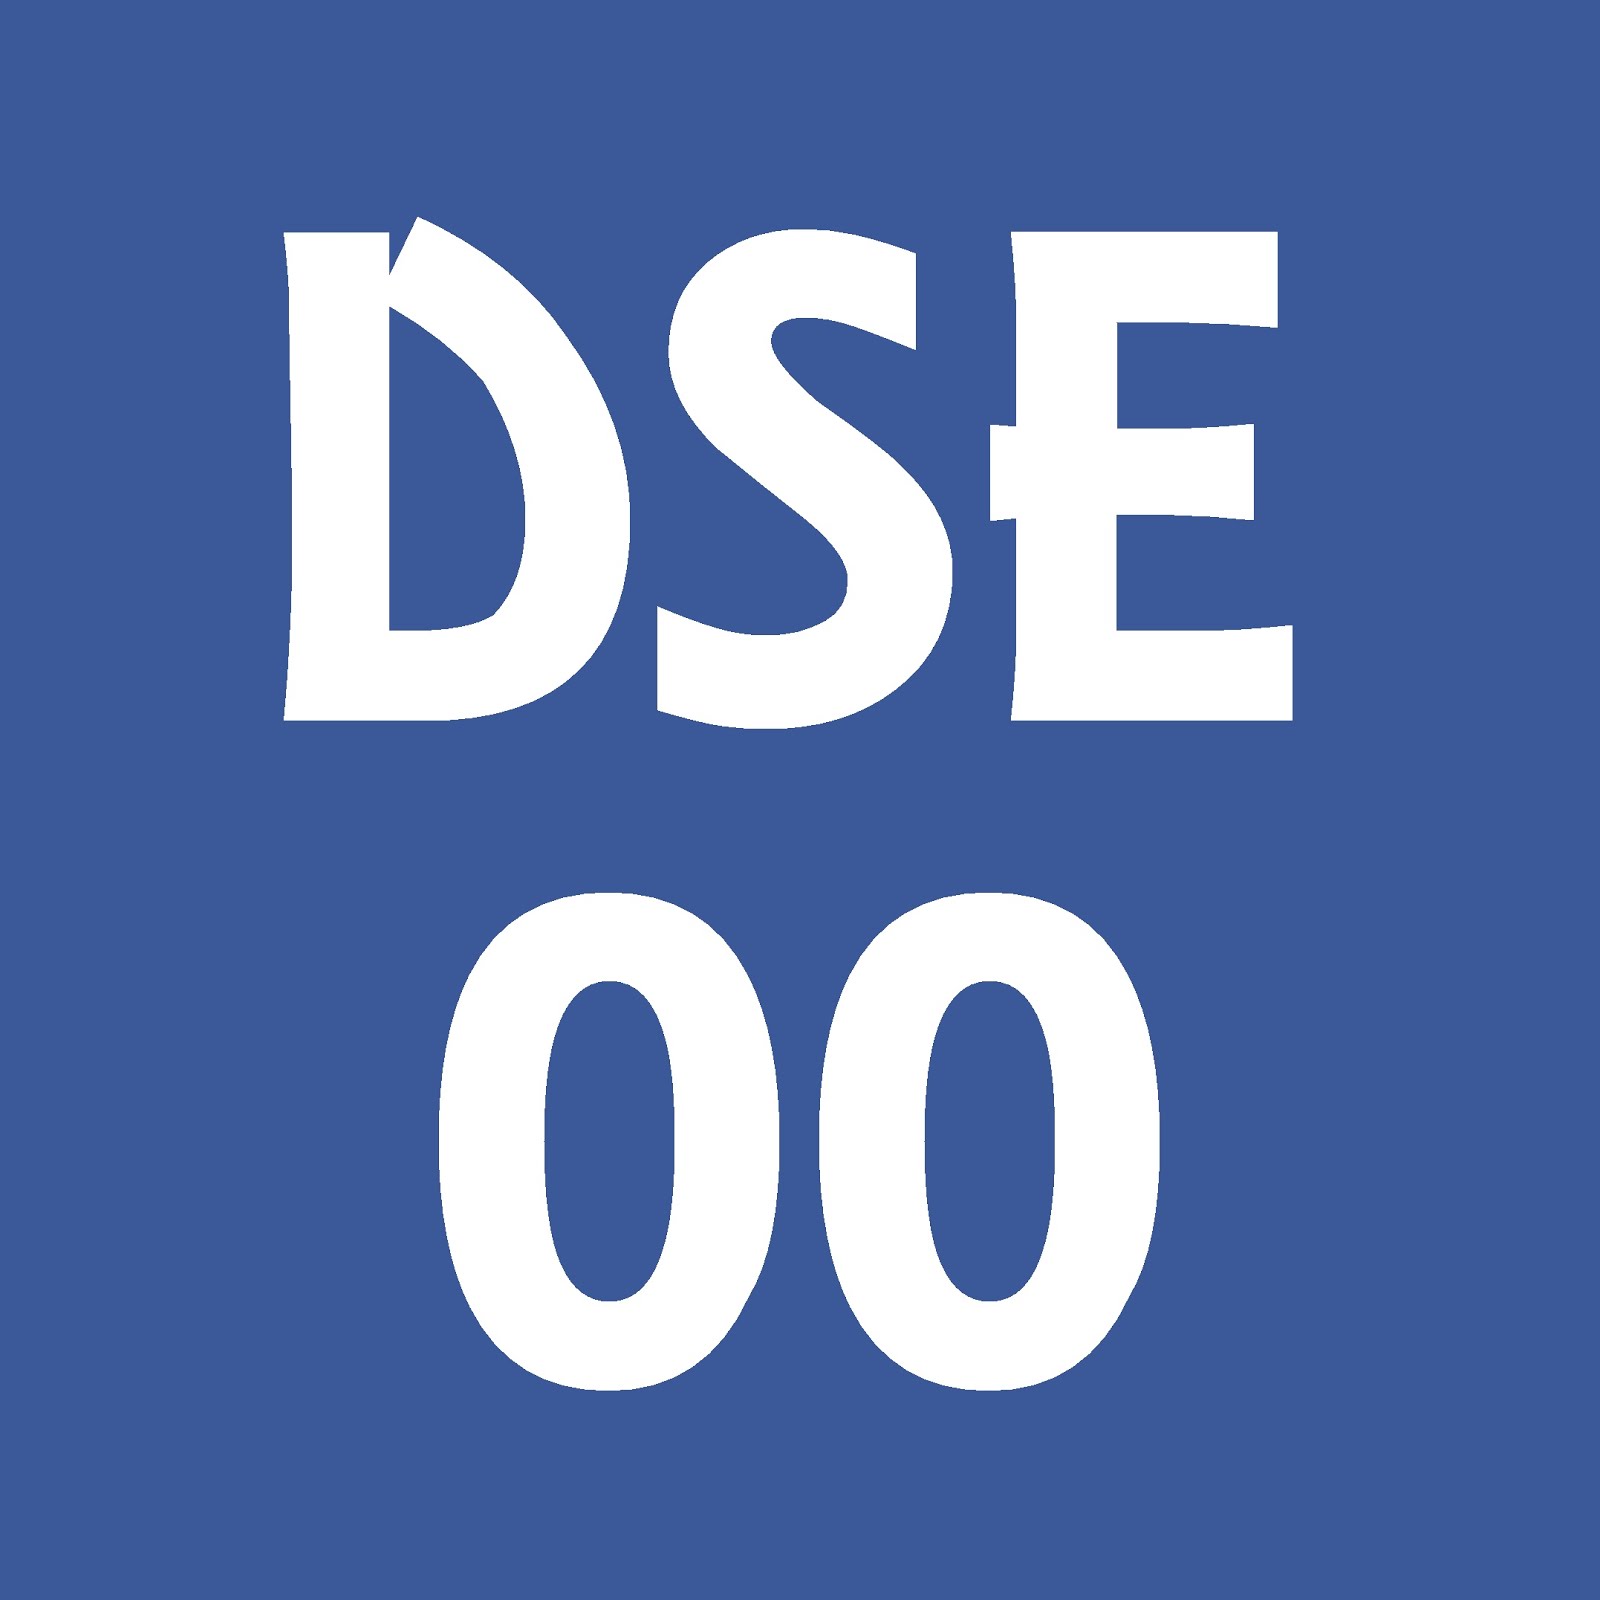 DSE00 資源區